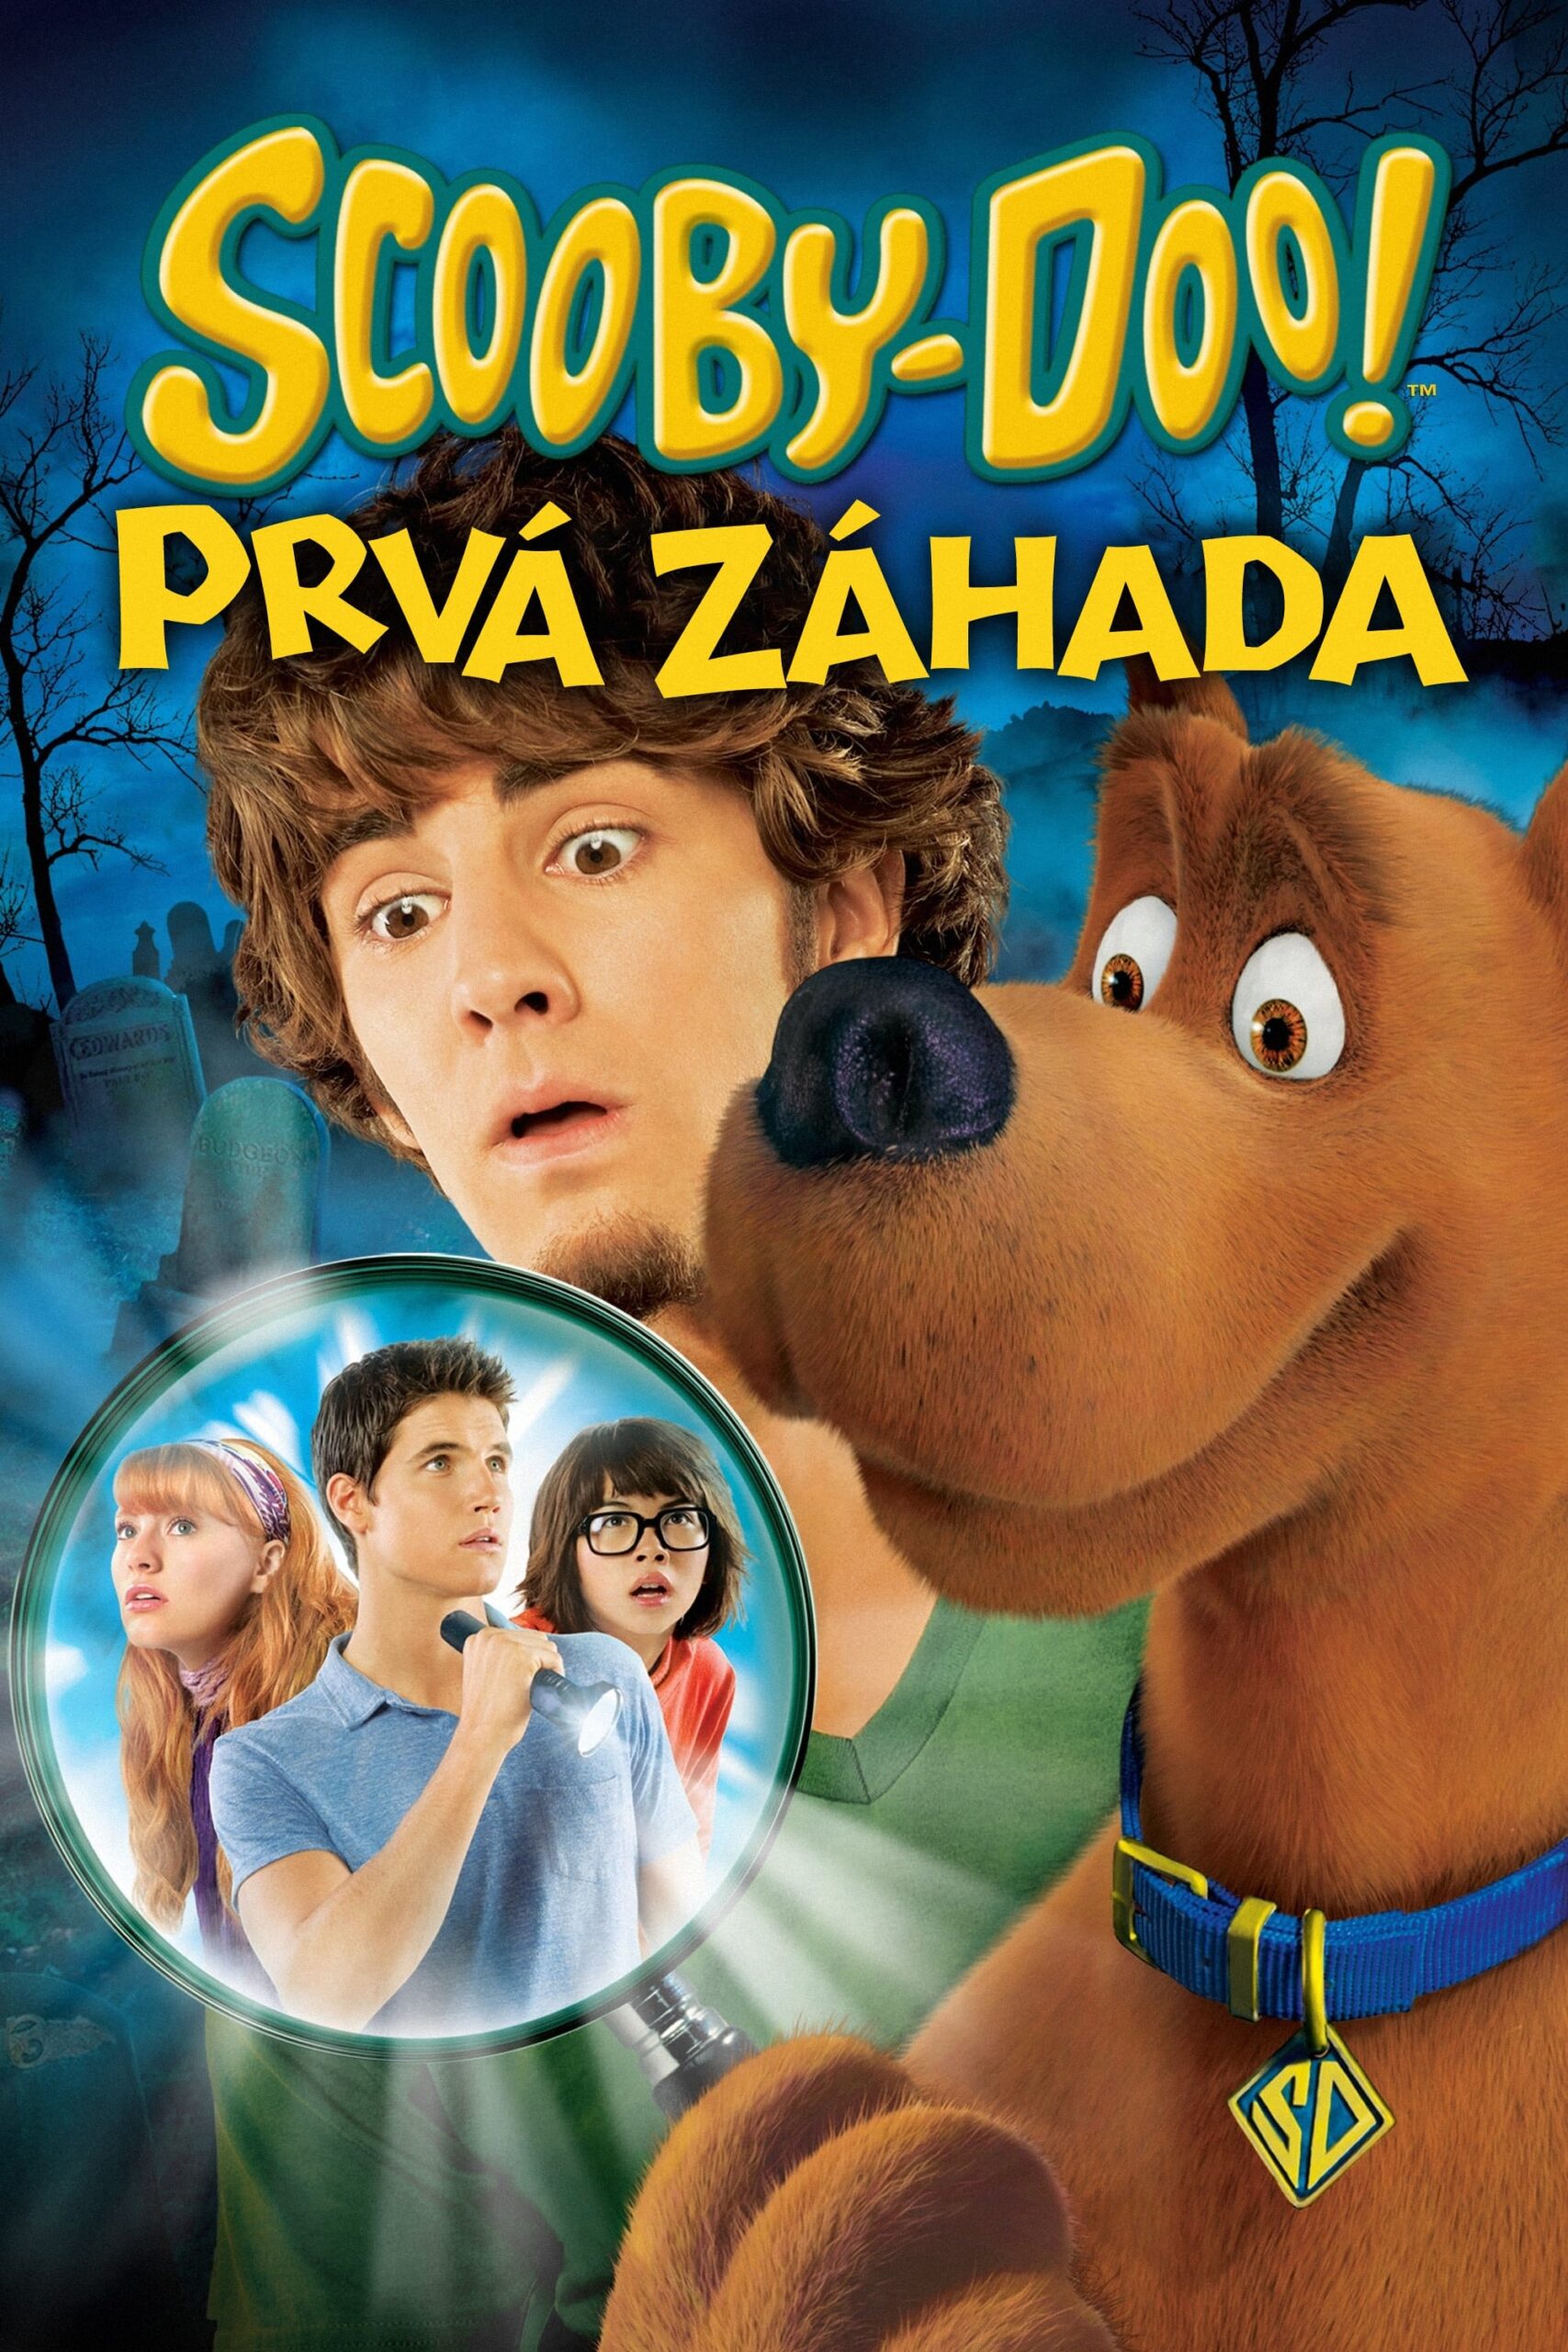 ดูหนังออนไลน์ฟรี Scooby-Doo! The Mystery Begins สกูบี้-ดู กับคดีปริศนามหาสนุก (2009) เต็มเรื่อง